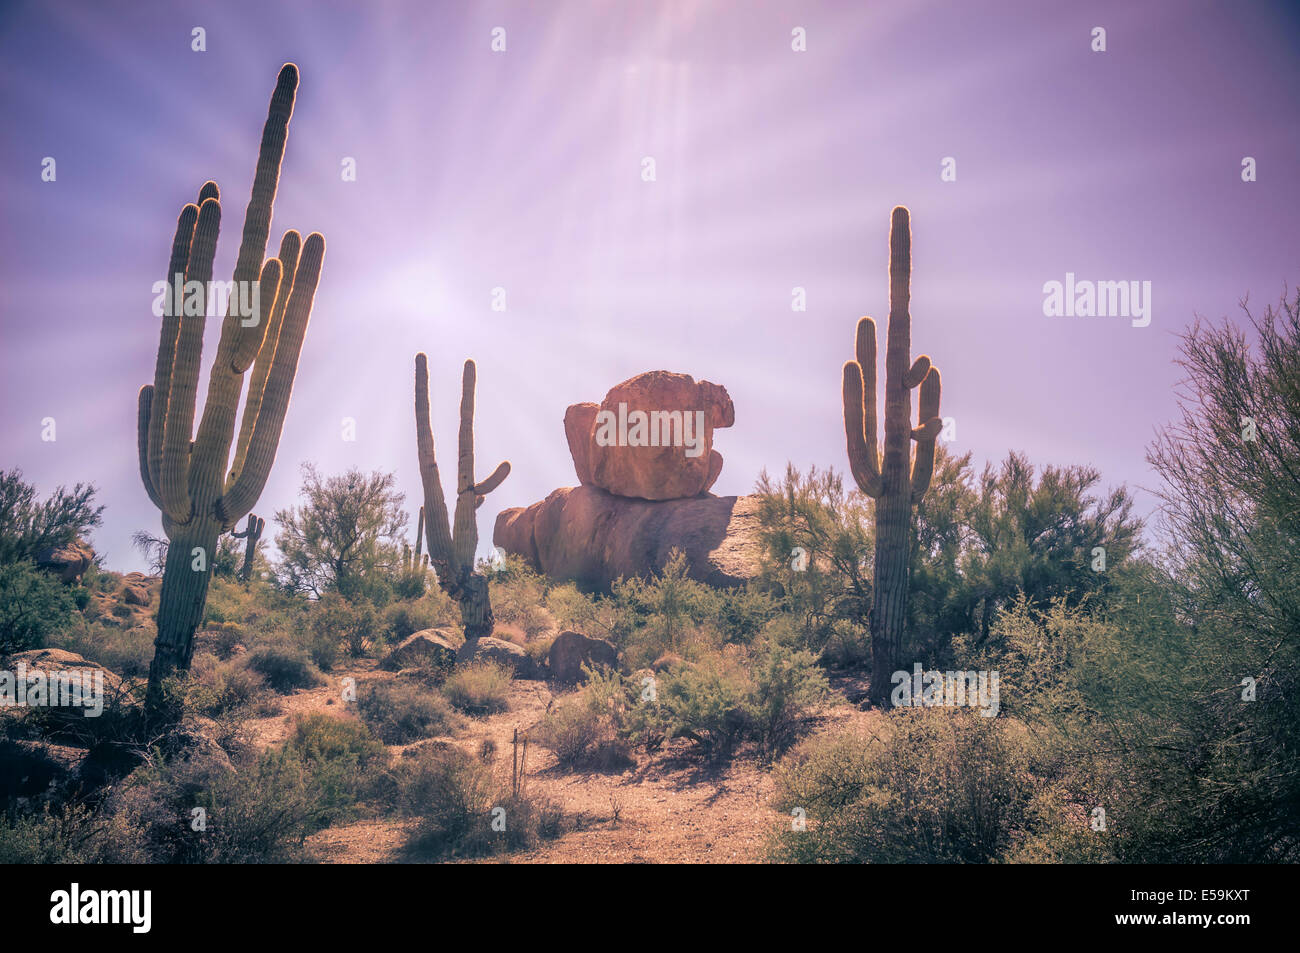 Wüstenlandschaft - Sonne prasselte Wüste mit Saguaro Kaktus Baum und Felsbrocken. Linseneffekt. Stockfoto